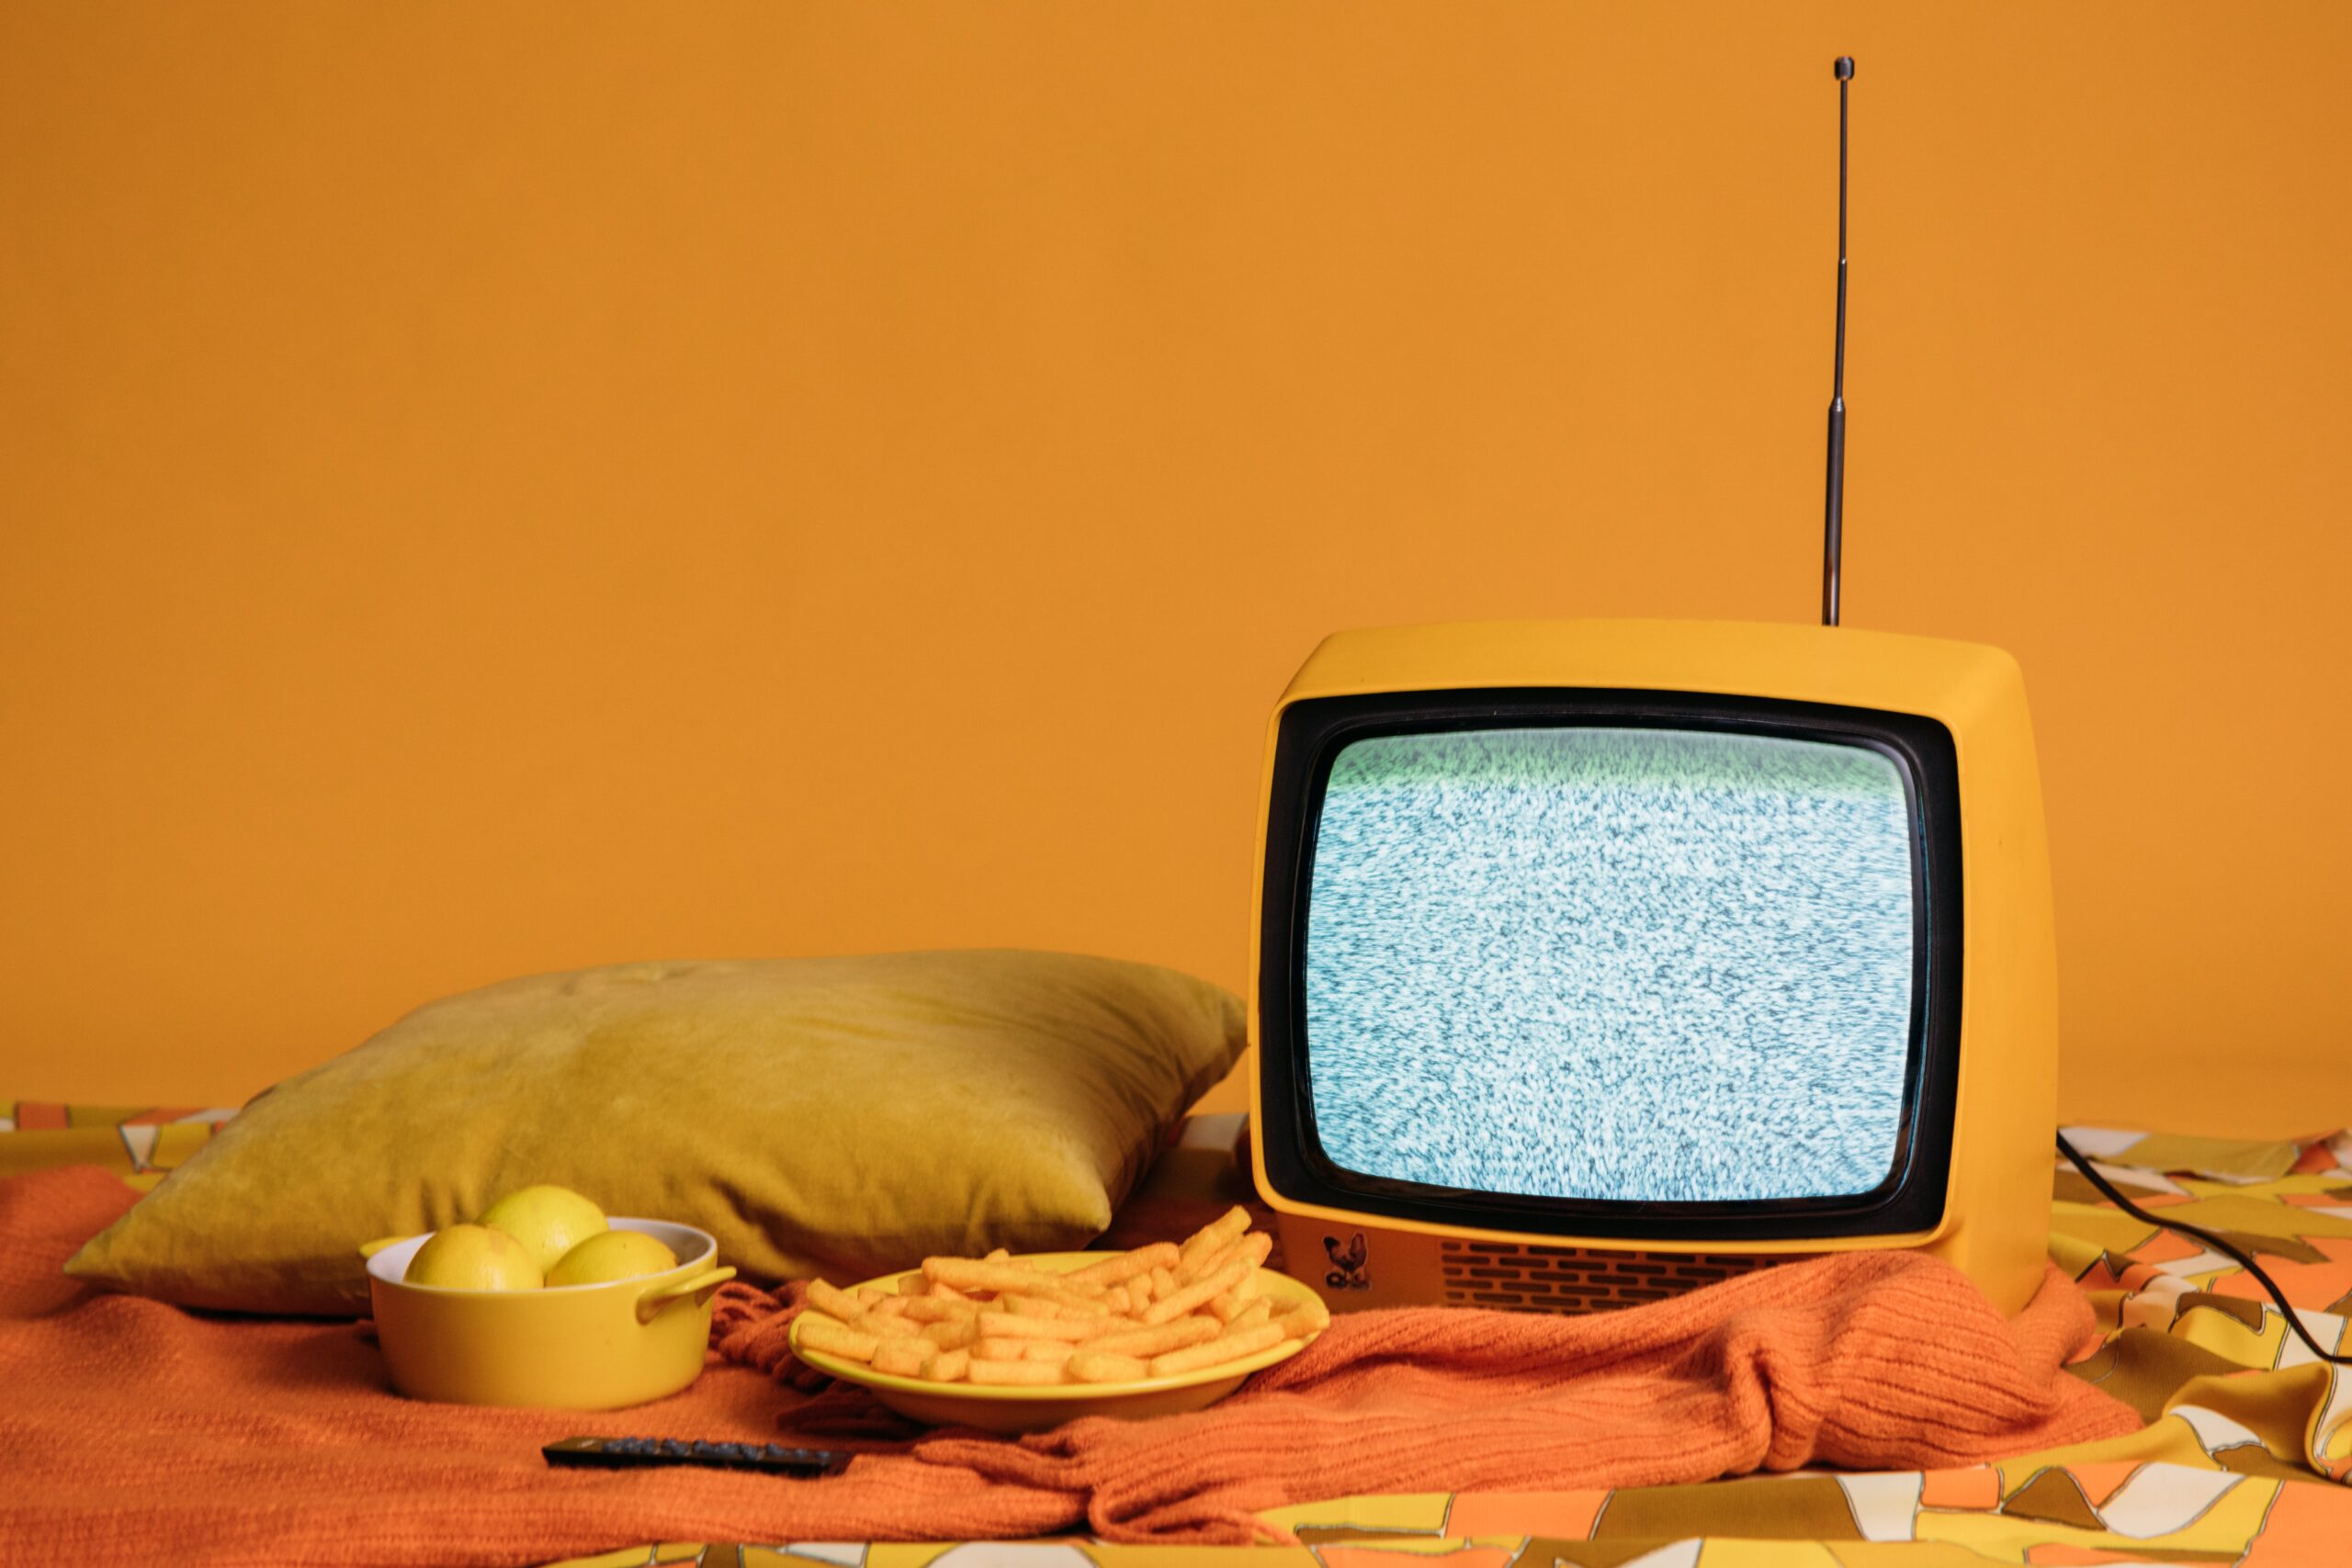 テレビ視聴率はどのように調査されているのか？ 日本と中国本土を例に